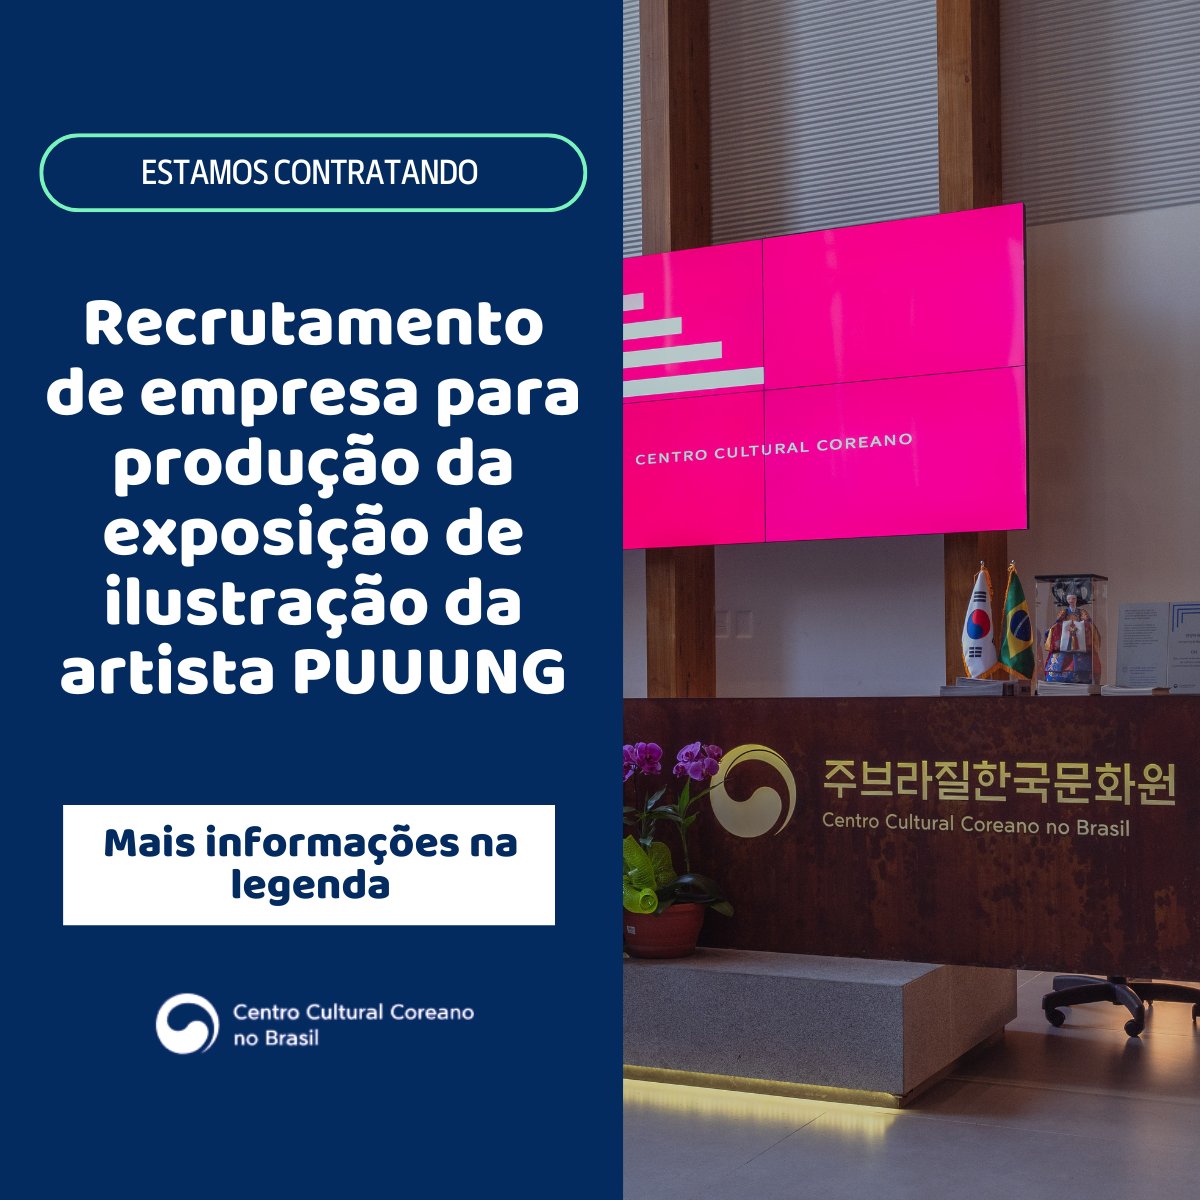 O Centro Cultural Coreano no Brasil está recrutando empresas que desejam participar da produção da exposição de ilustração da artista PUUUNG, a ser realizada no Centro Cultural Coreano durante os meses de junho a setembro.